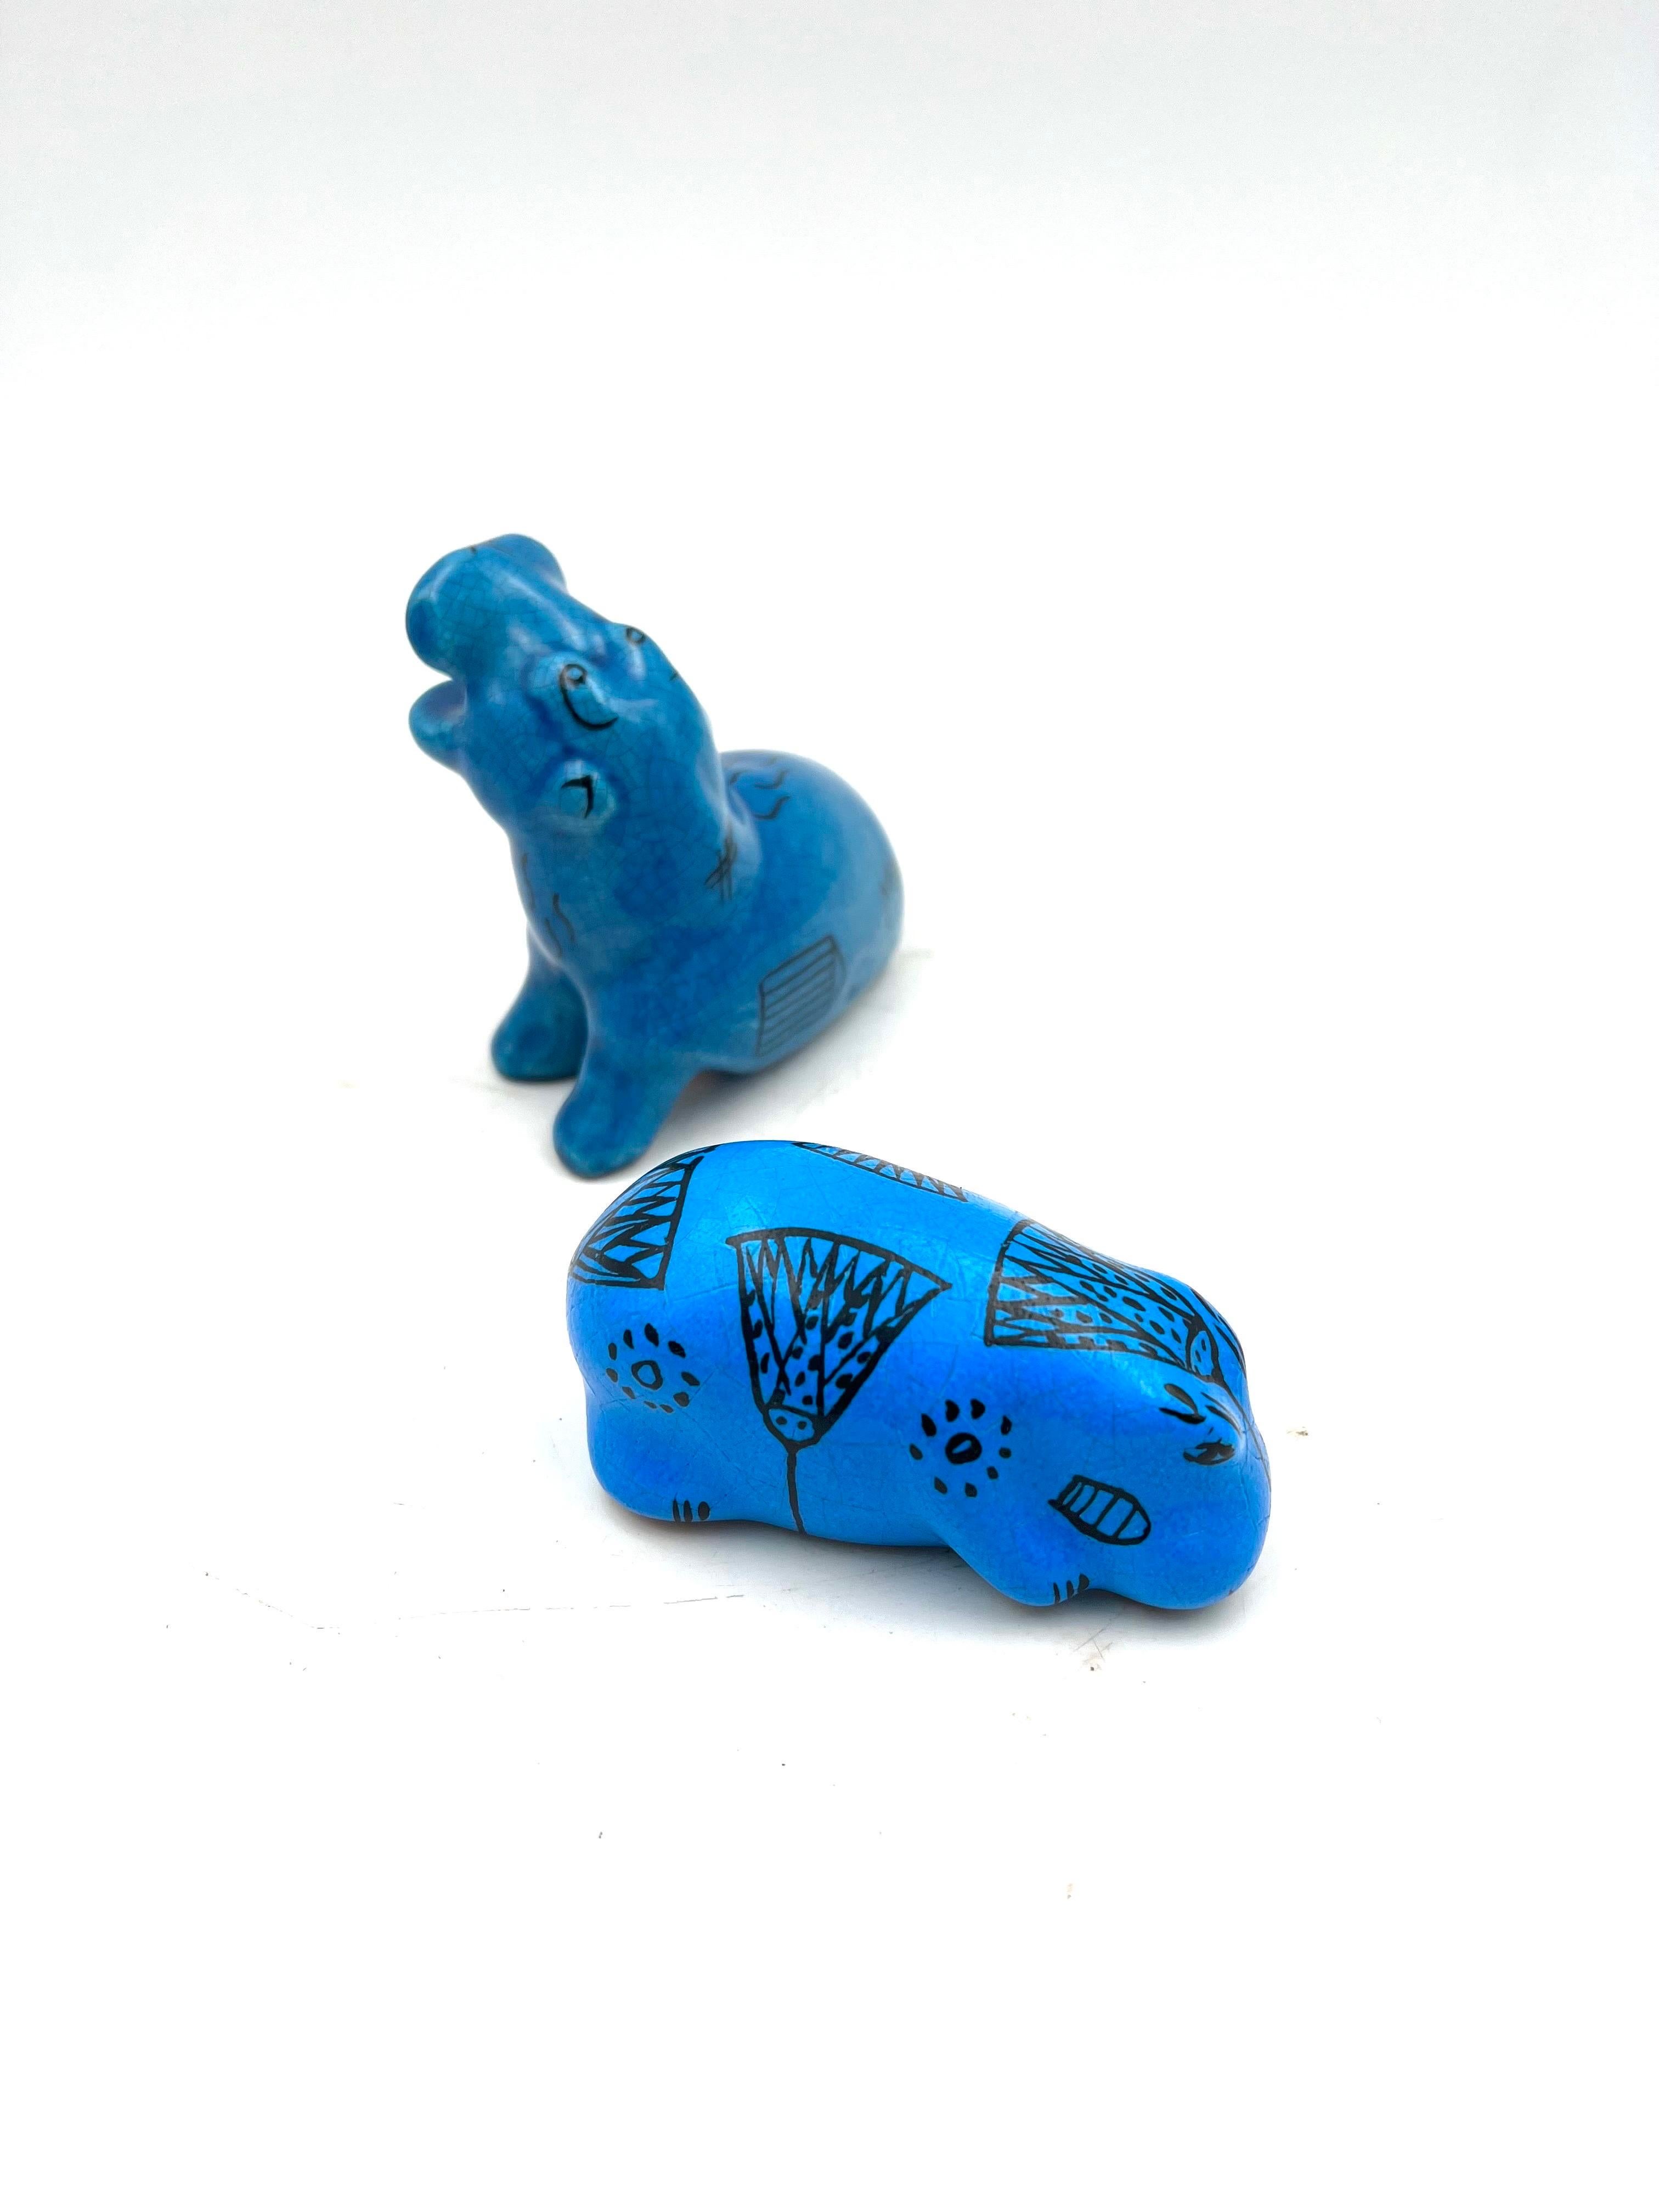 blue hippo statue